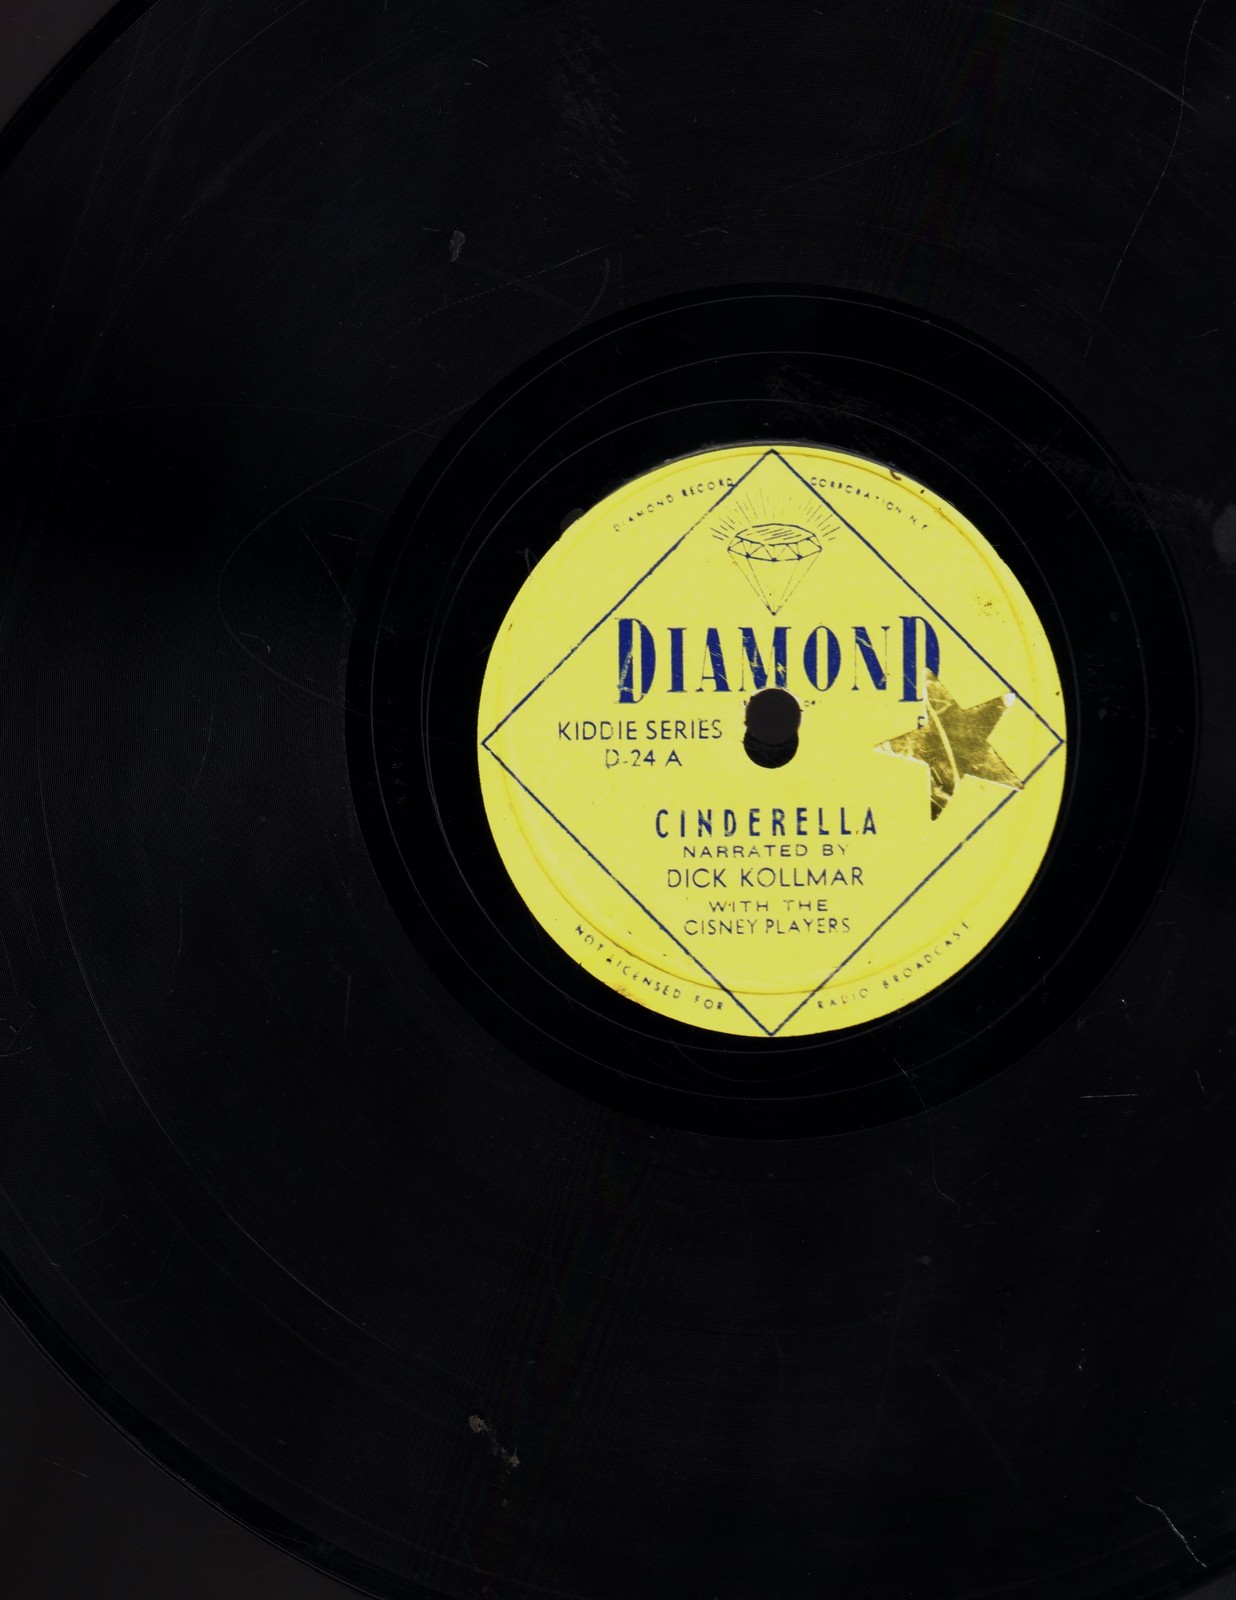 Primary image for Diamond Records - Cinderella 78rpm record